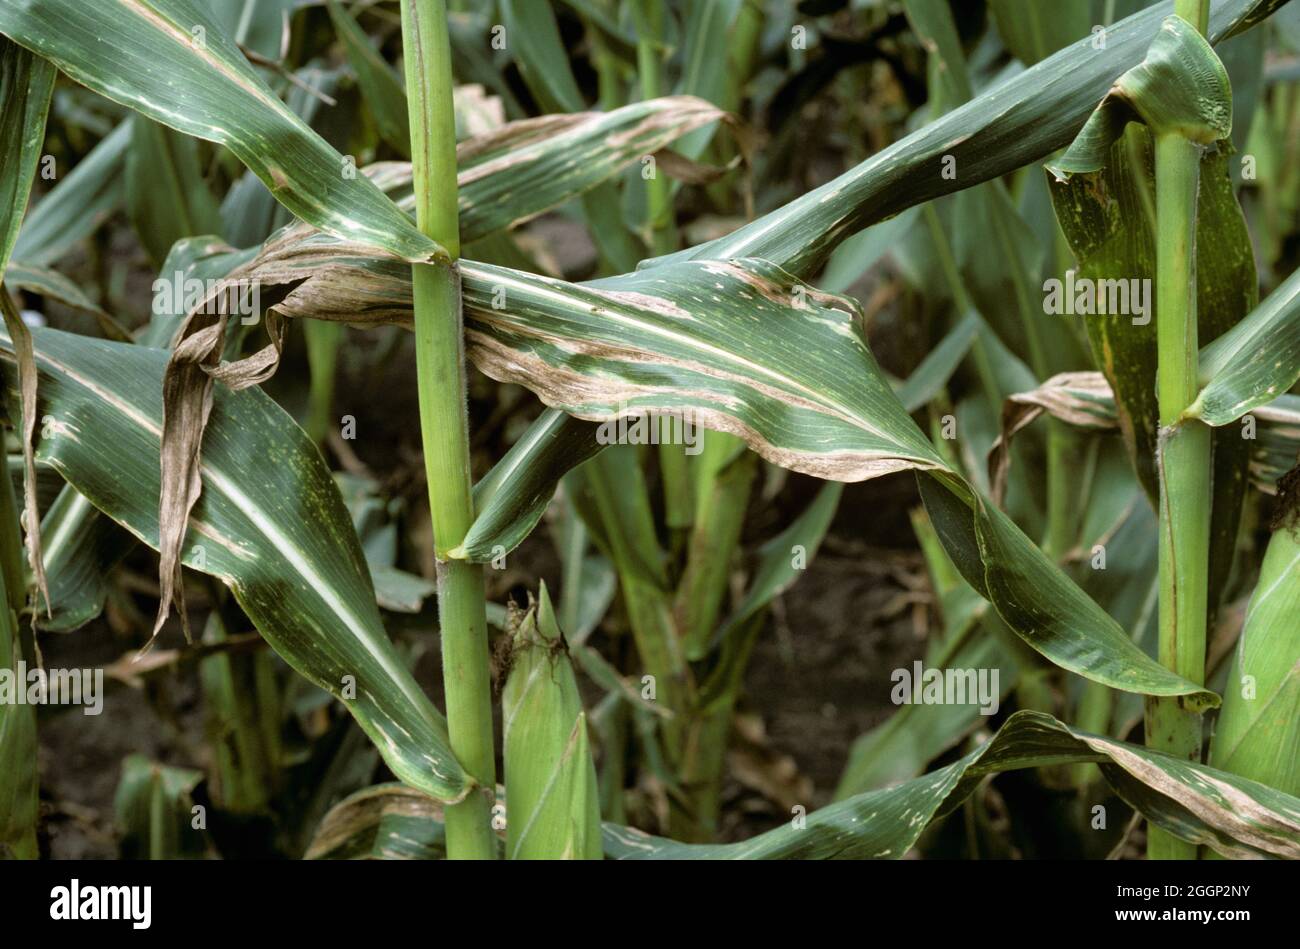 Stewart's wilt (Pantoea stewartii) lesioni longitudinali necrotiche sulle foglie di mais maturo o raccolto di mais, USA Foto Stock